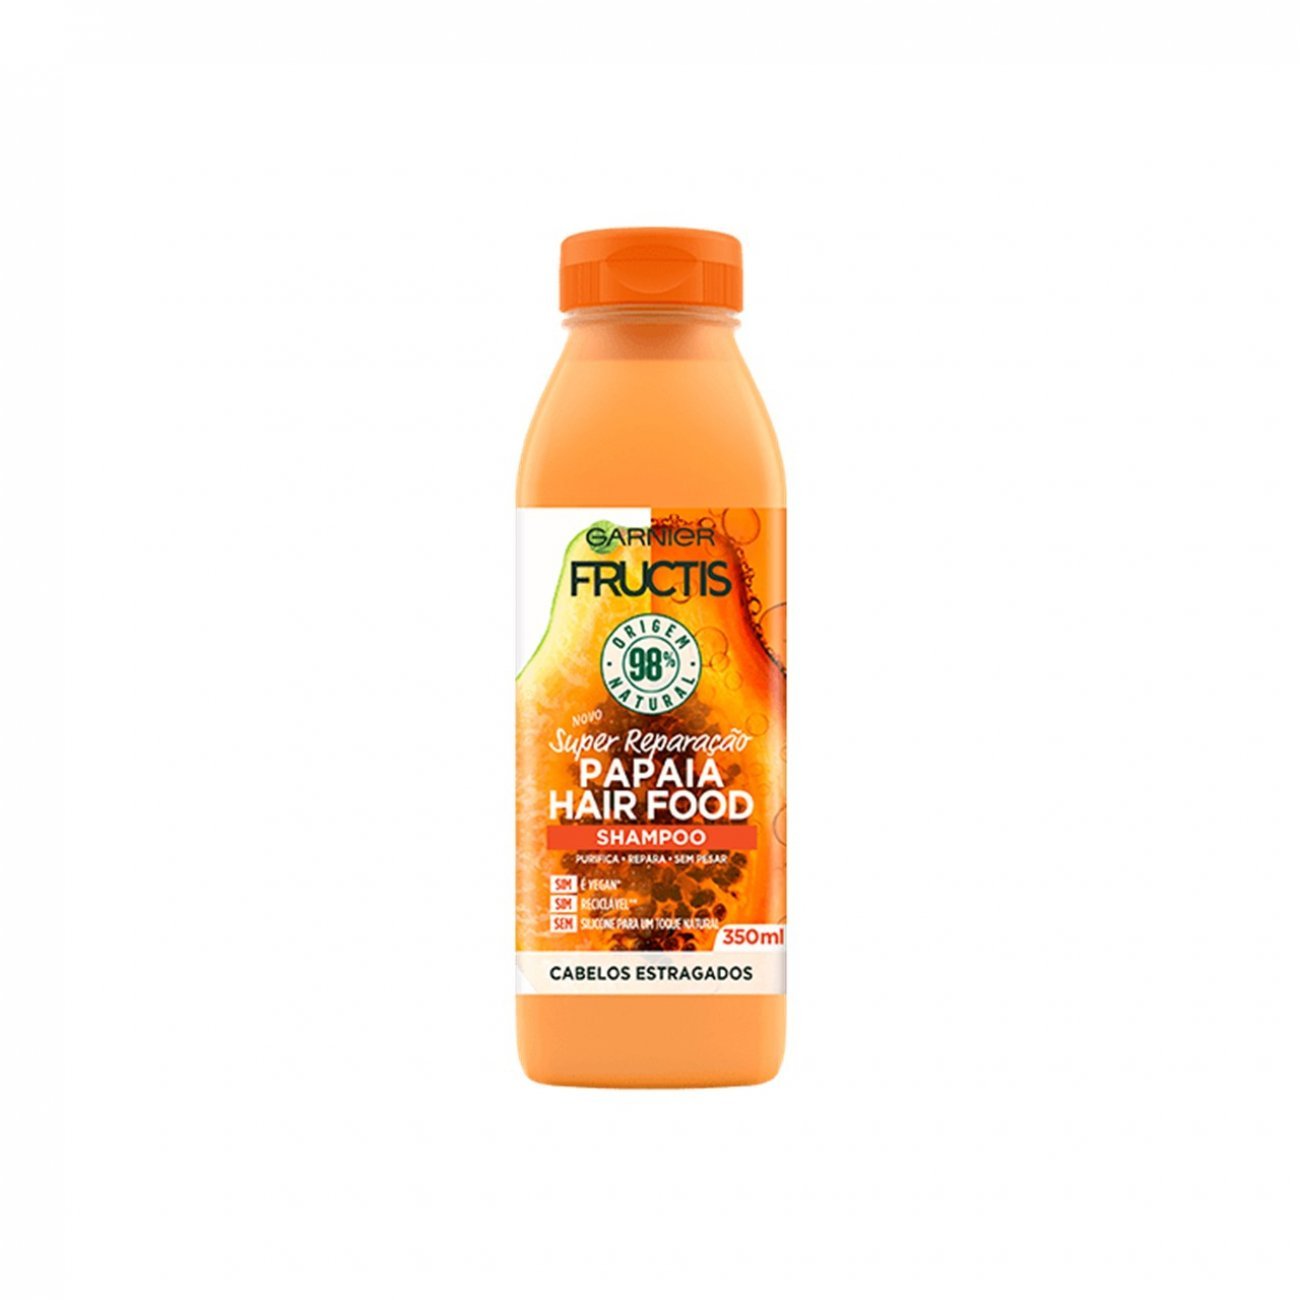 Fructis Hair Food Papaya Shampoo 350ml